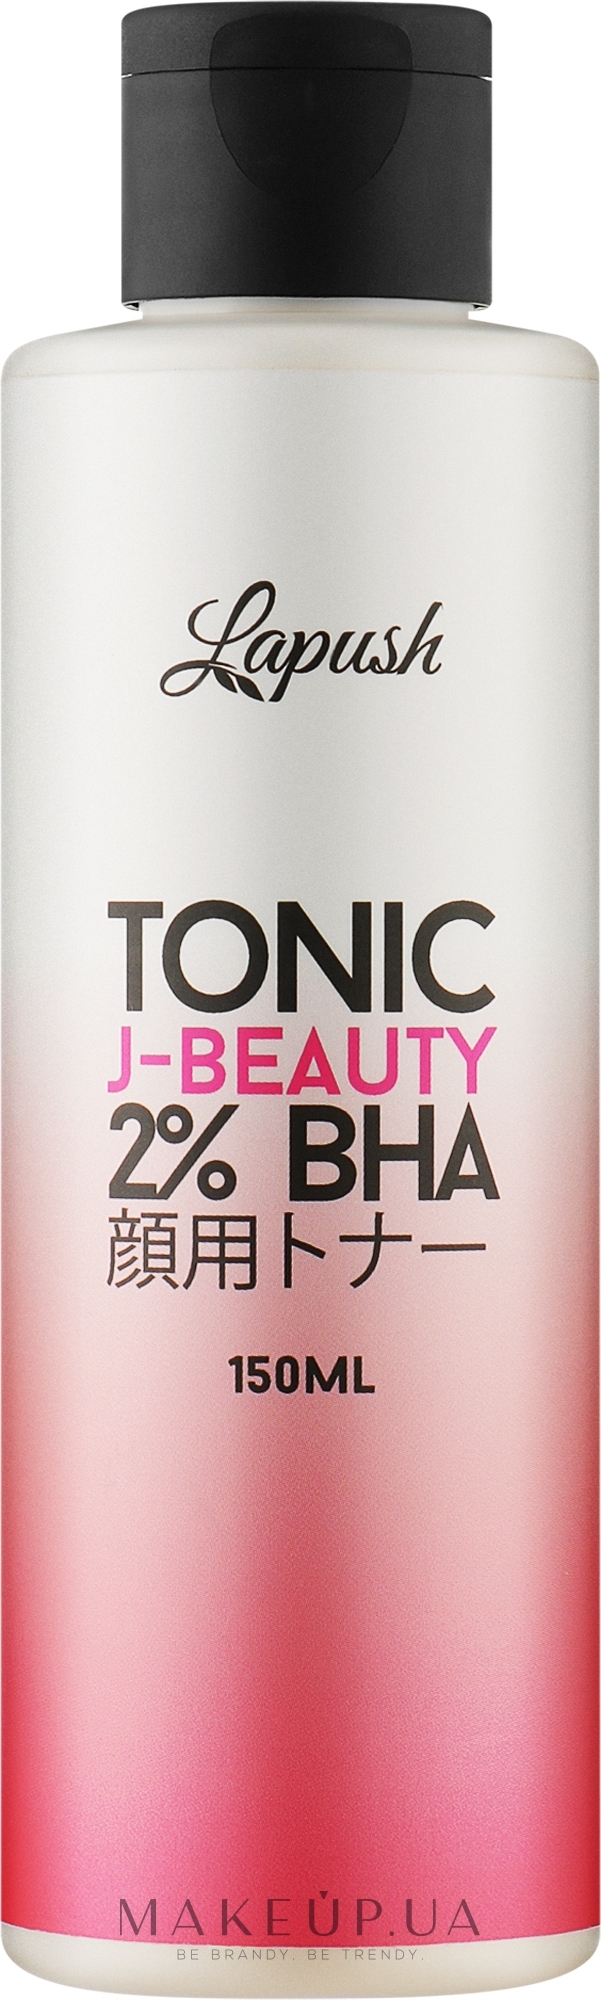 Тонік для обличчя - Lapush 2% ВНА J-Beauty Tonic — фото 150ml